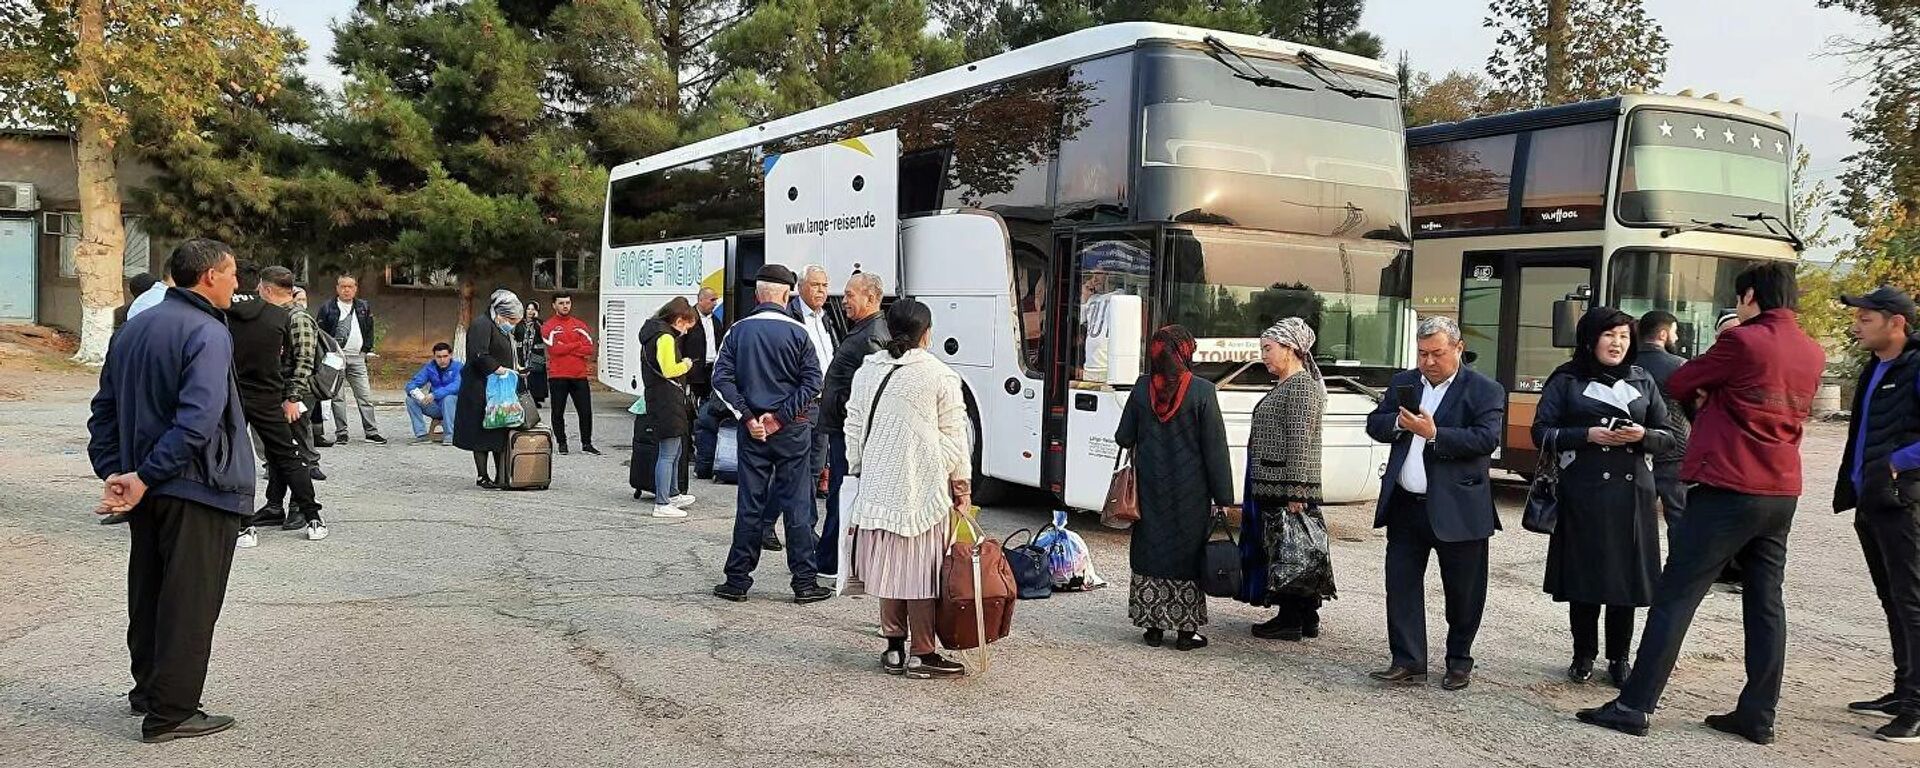 Первые пассажиры рейсового автобуса из Худжанда в Ташкент - Sputnik Узбекистан, 1920, 19.10.2021